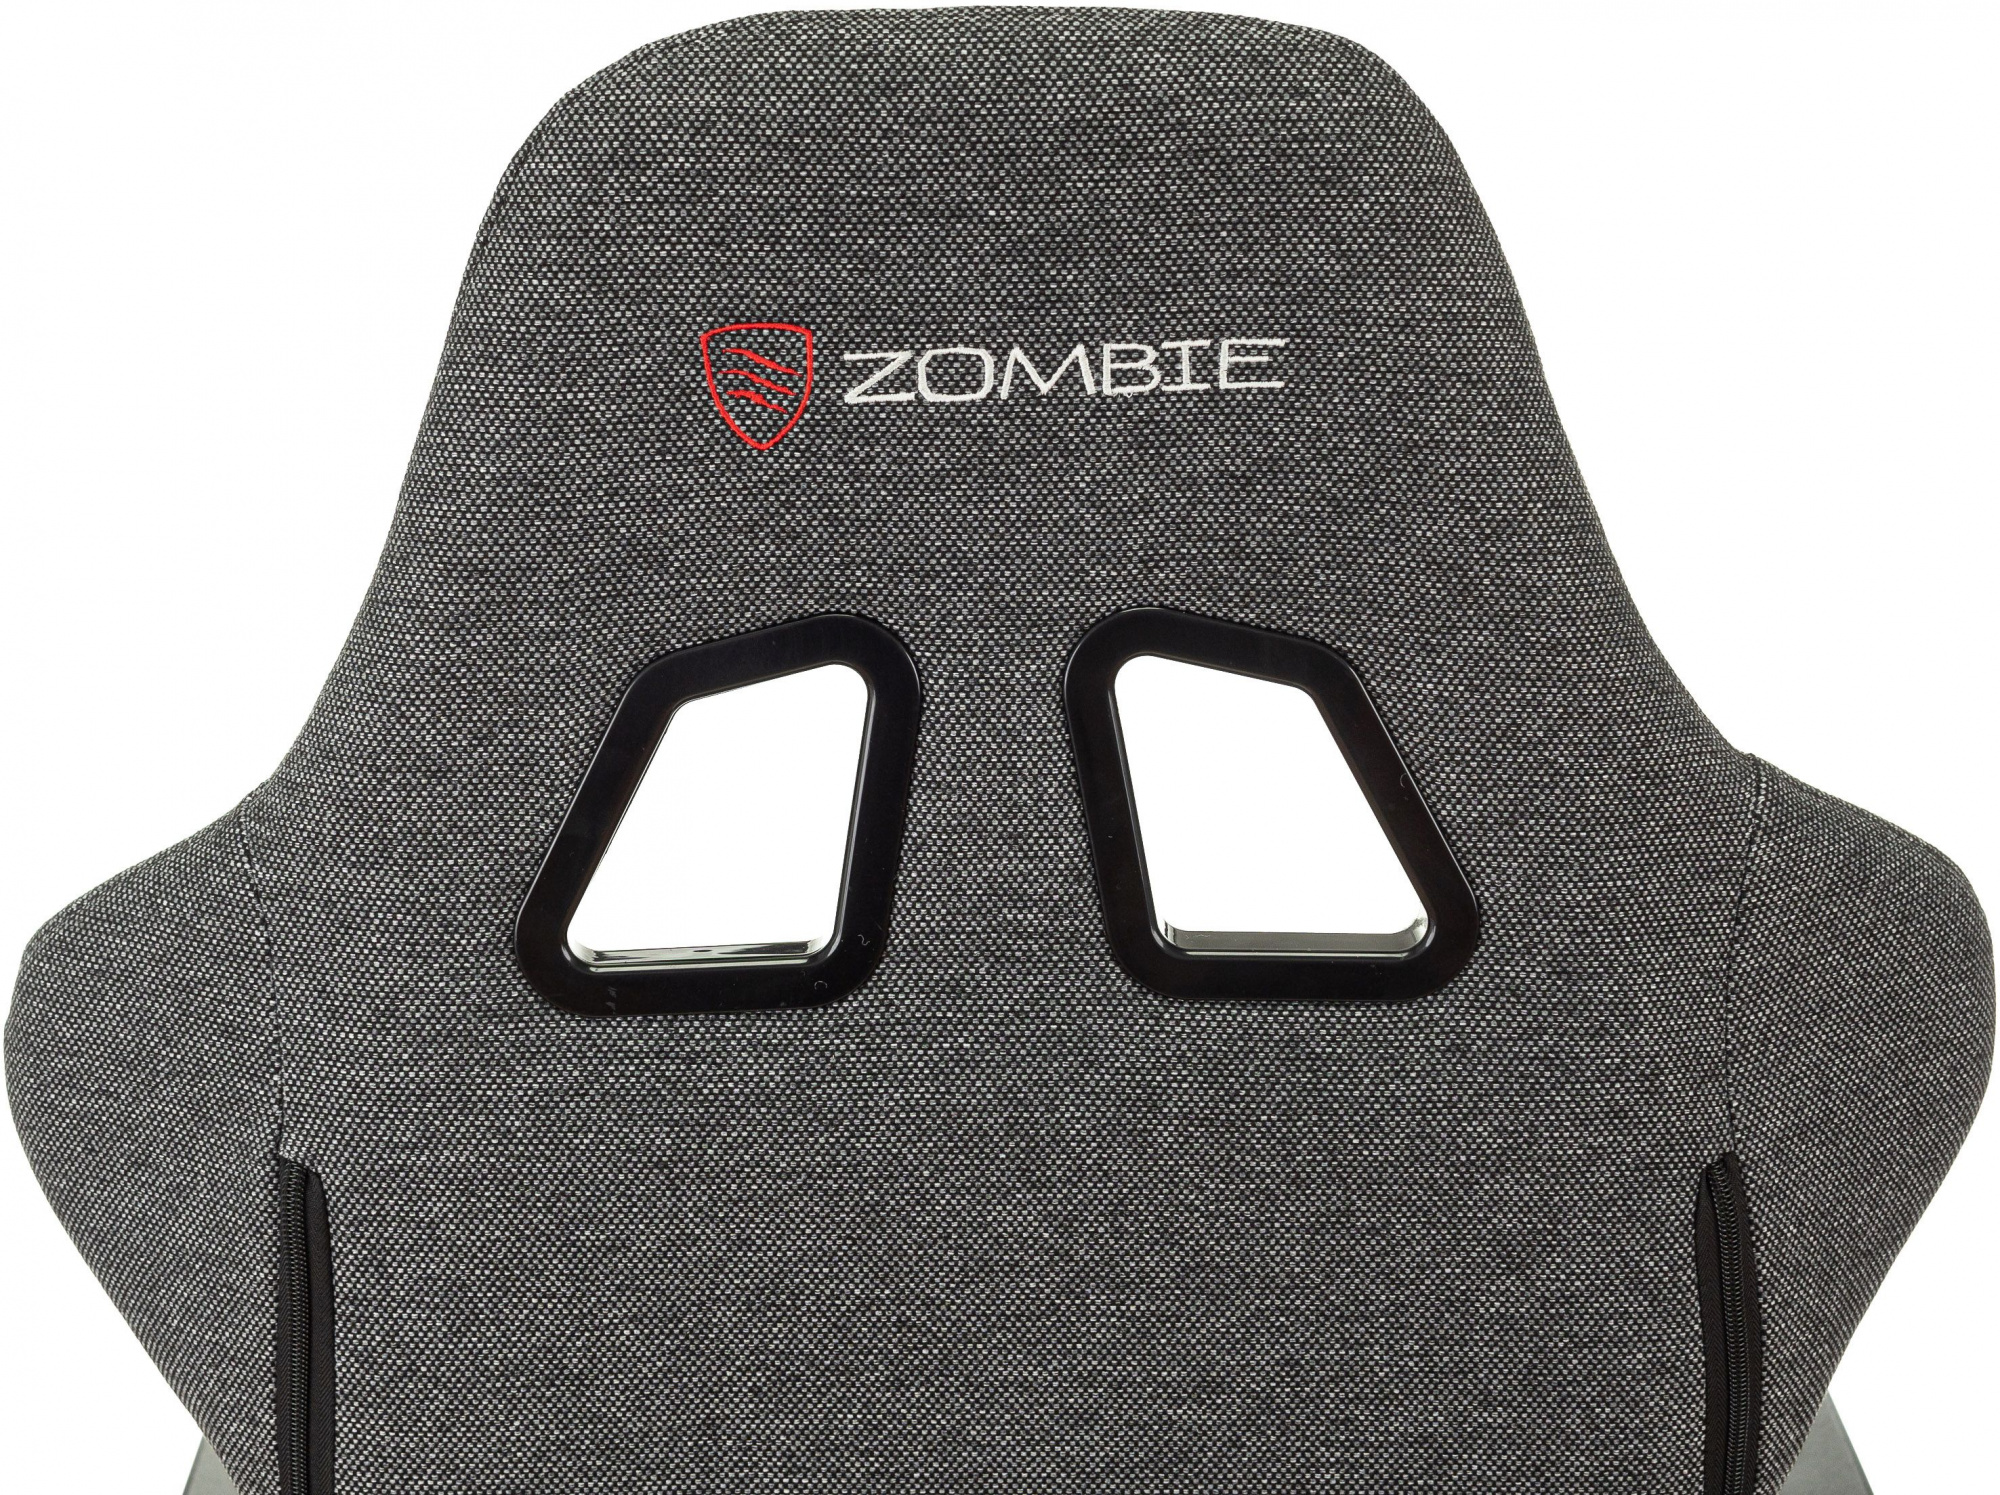 Кресло игровое Zombie Neo, обивка: ткань, цвет: серый (ZOMBIE NEOGREY) от магазина Buro.store